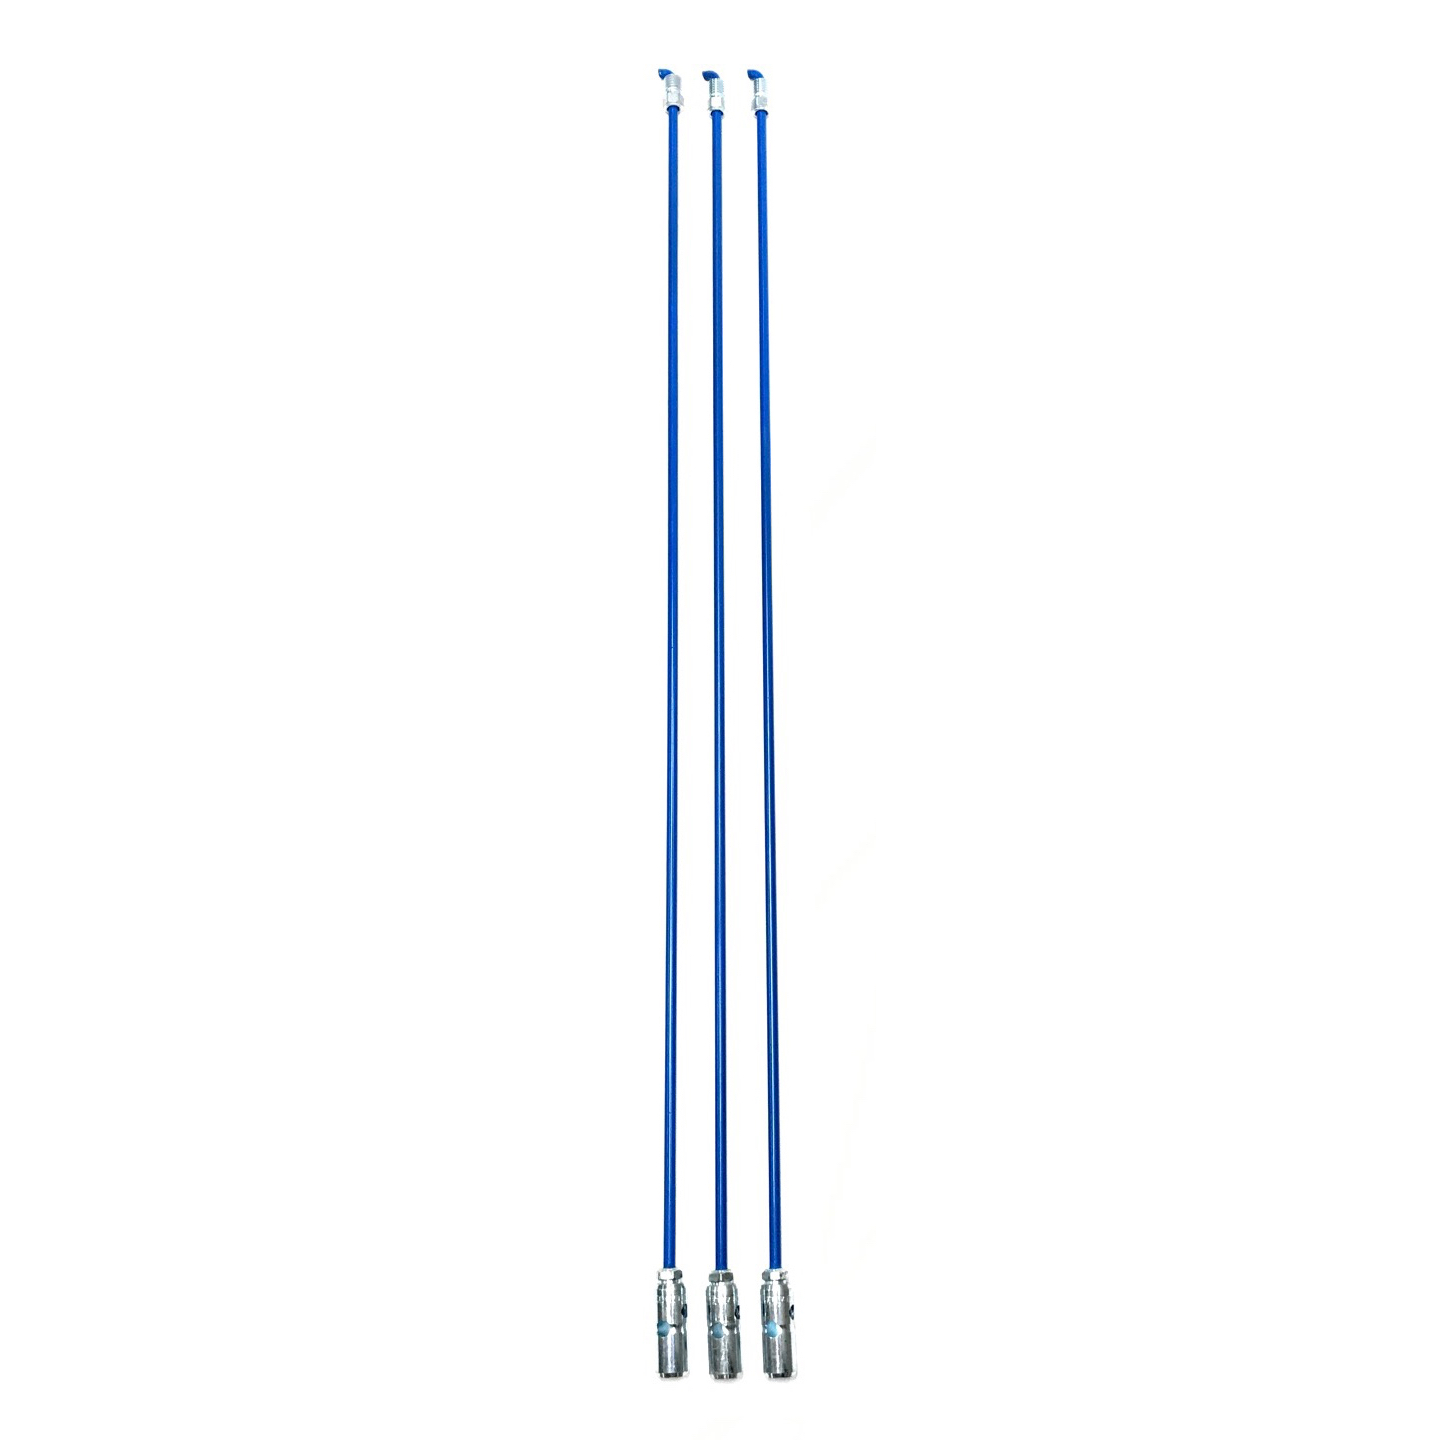 Blu-Steel® Sectional Steel Rods